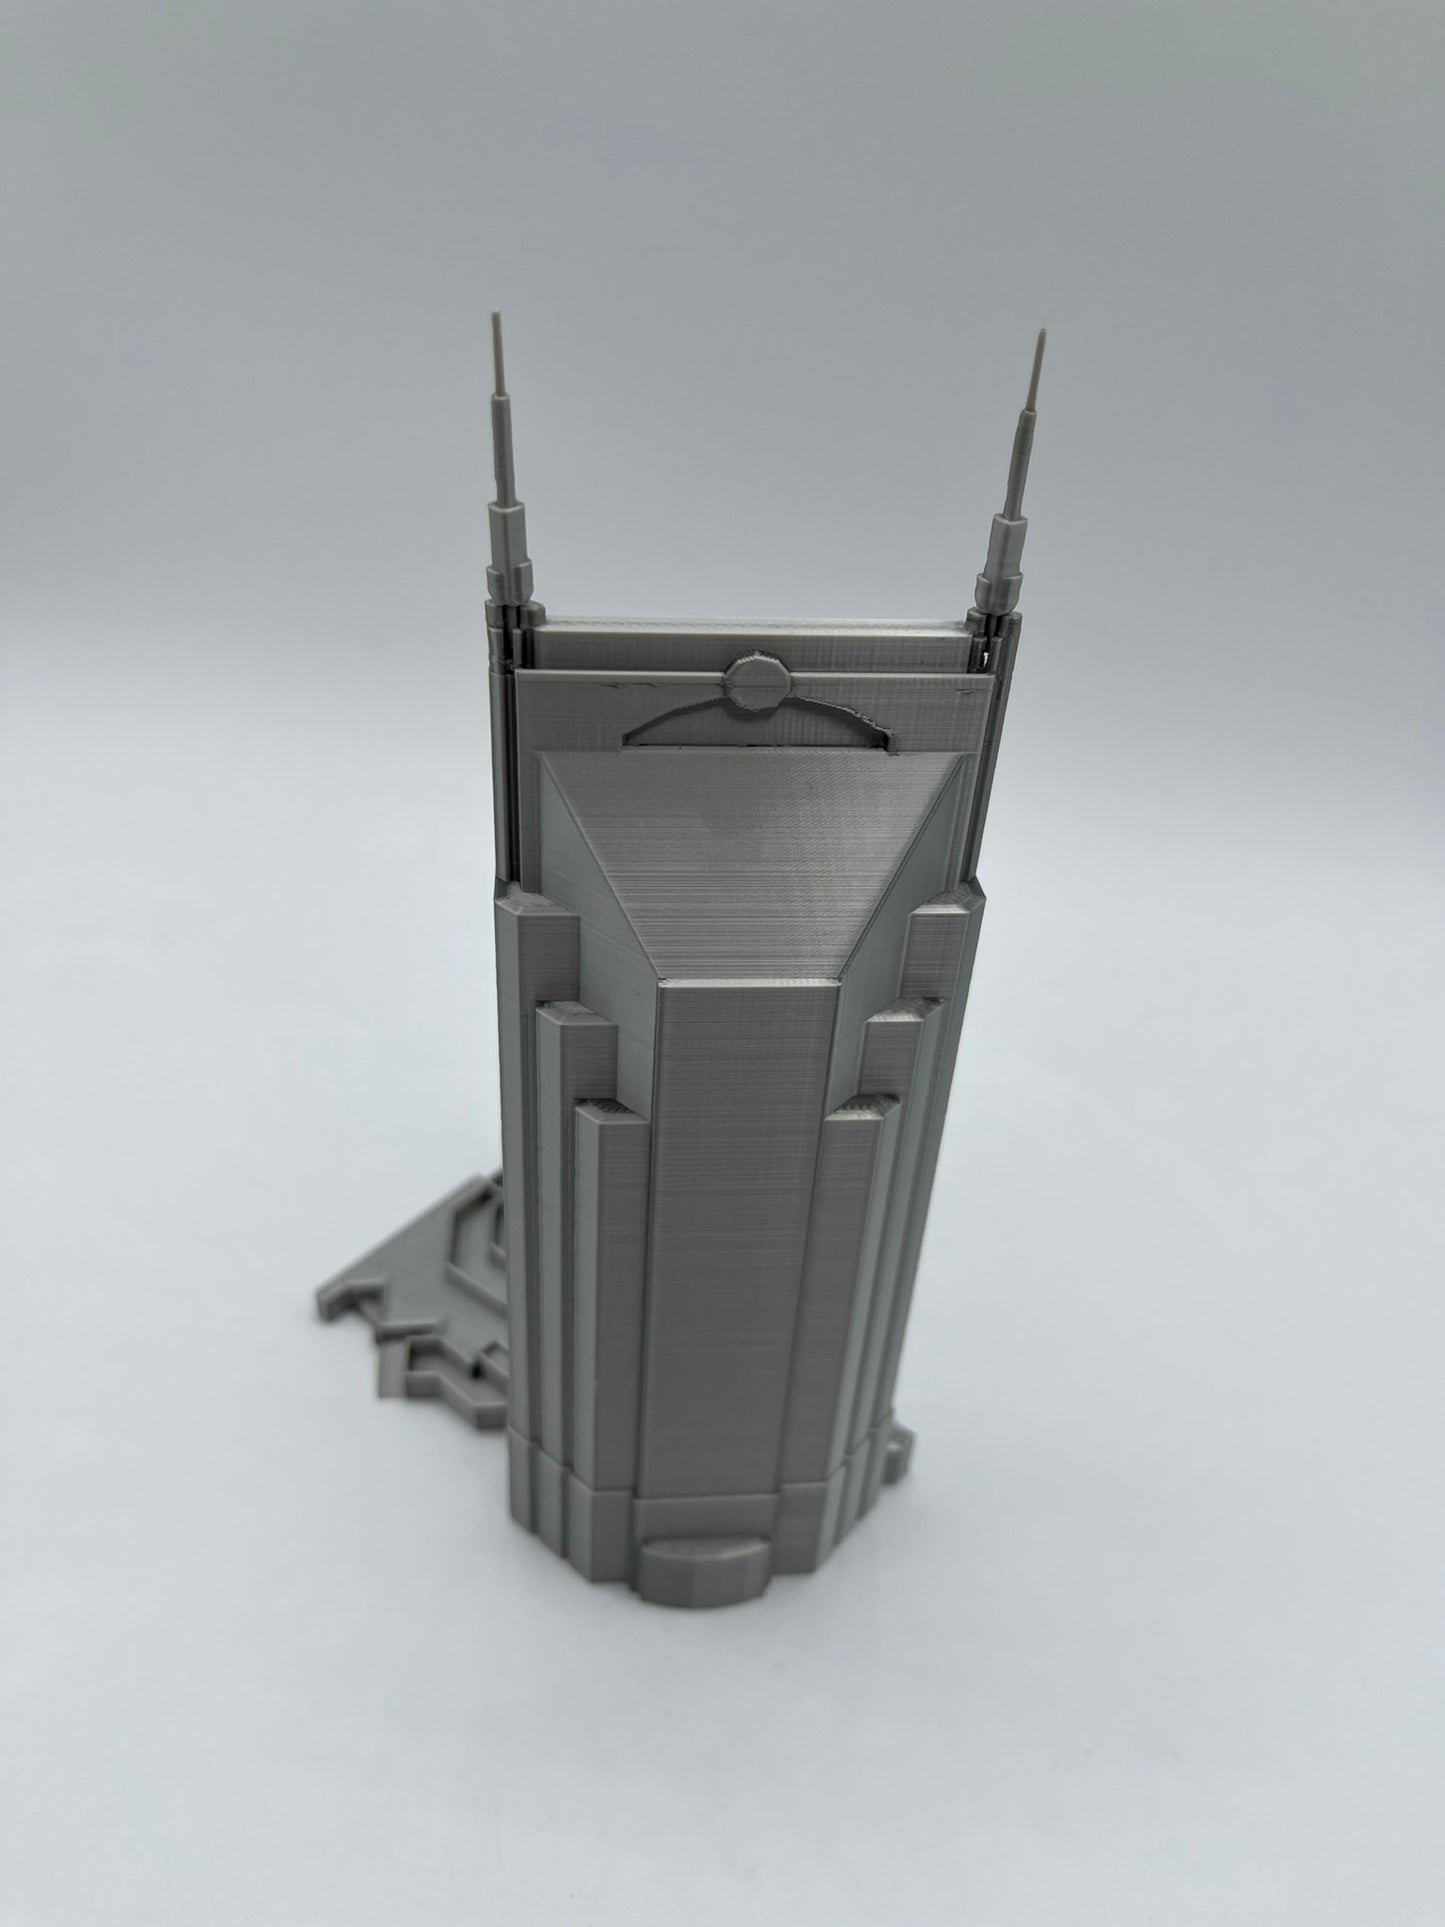 AT&T Building Nashville Model- 3D Printed